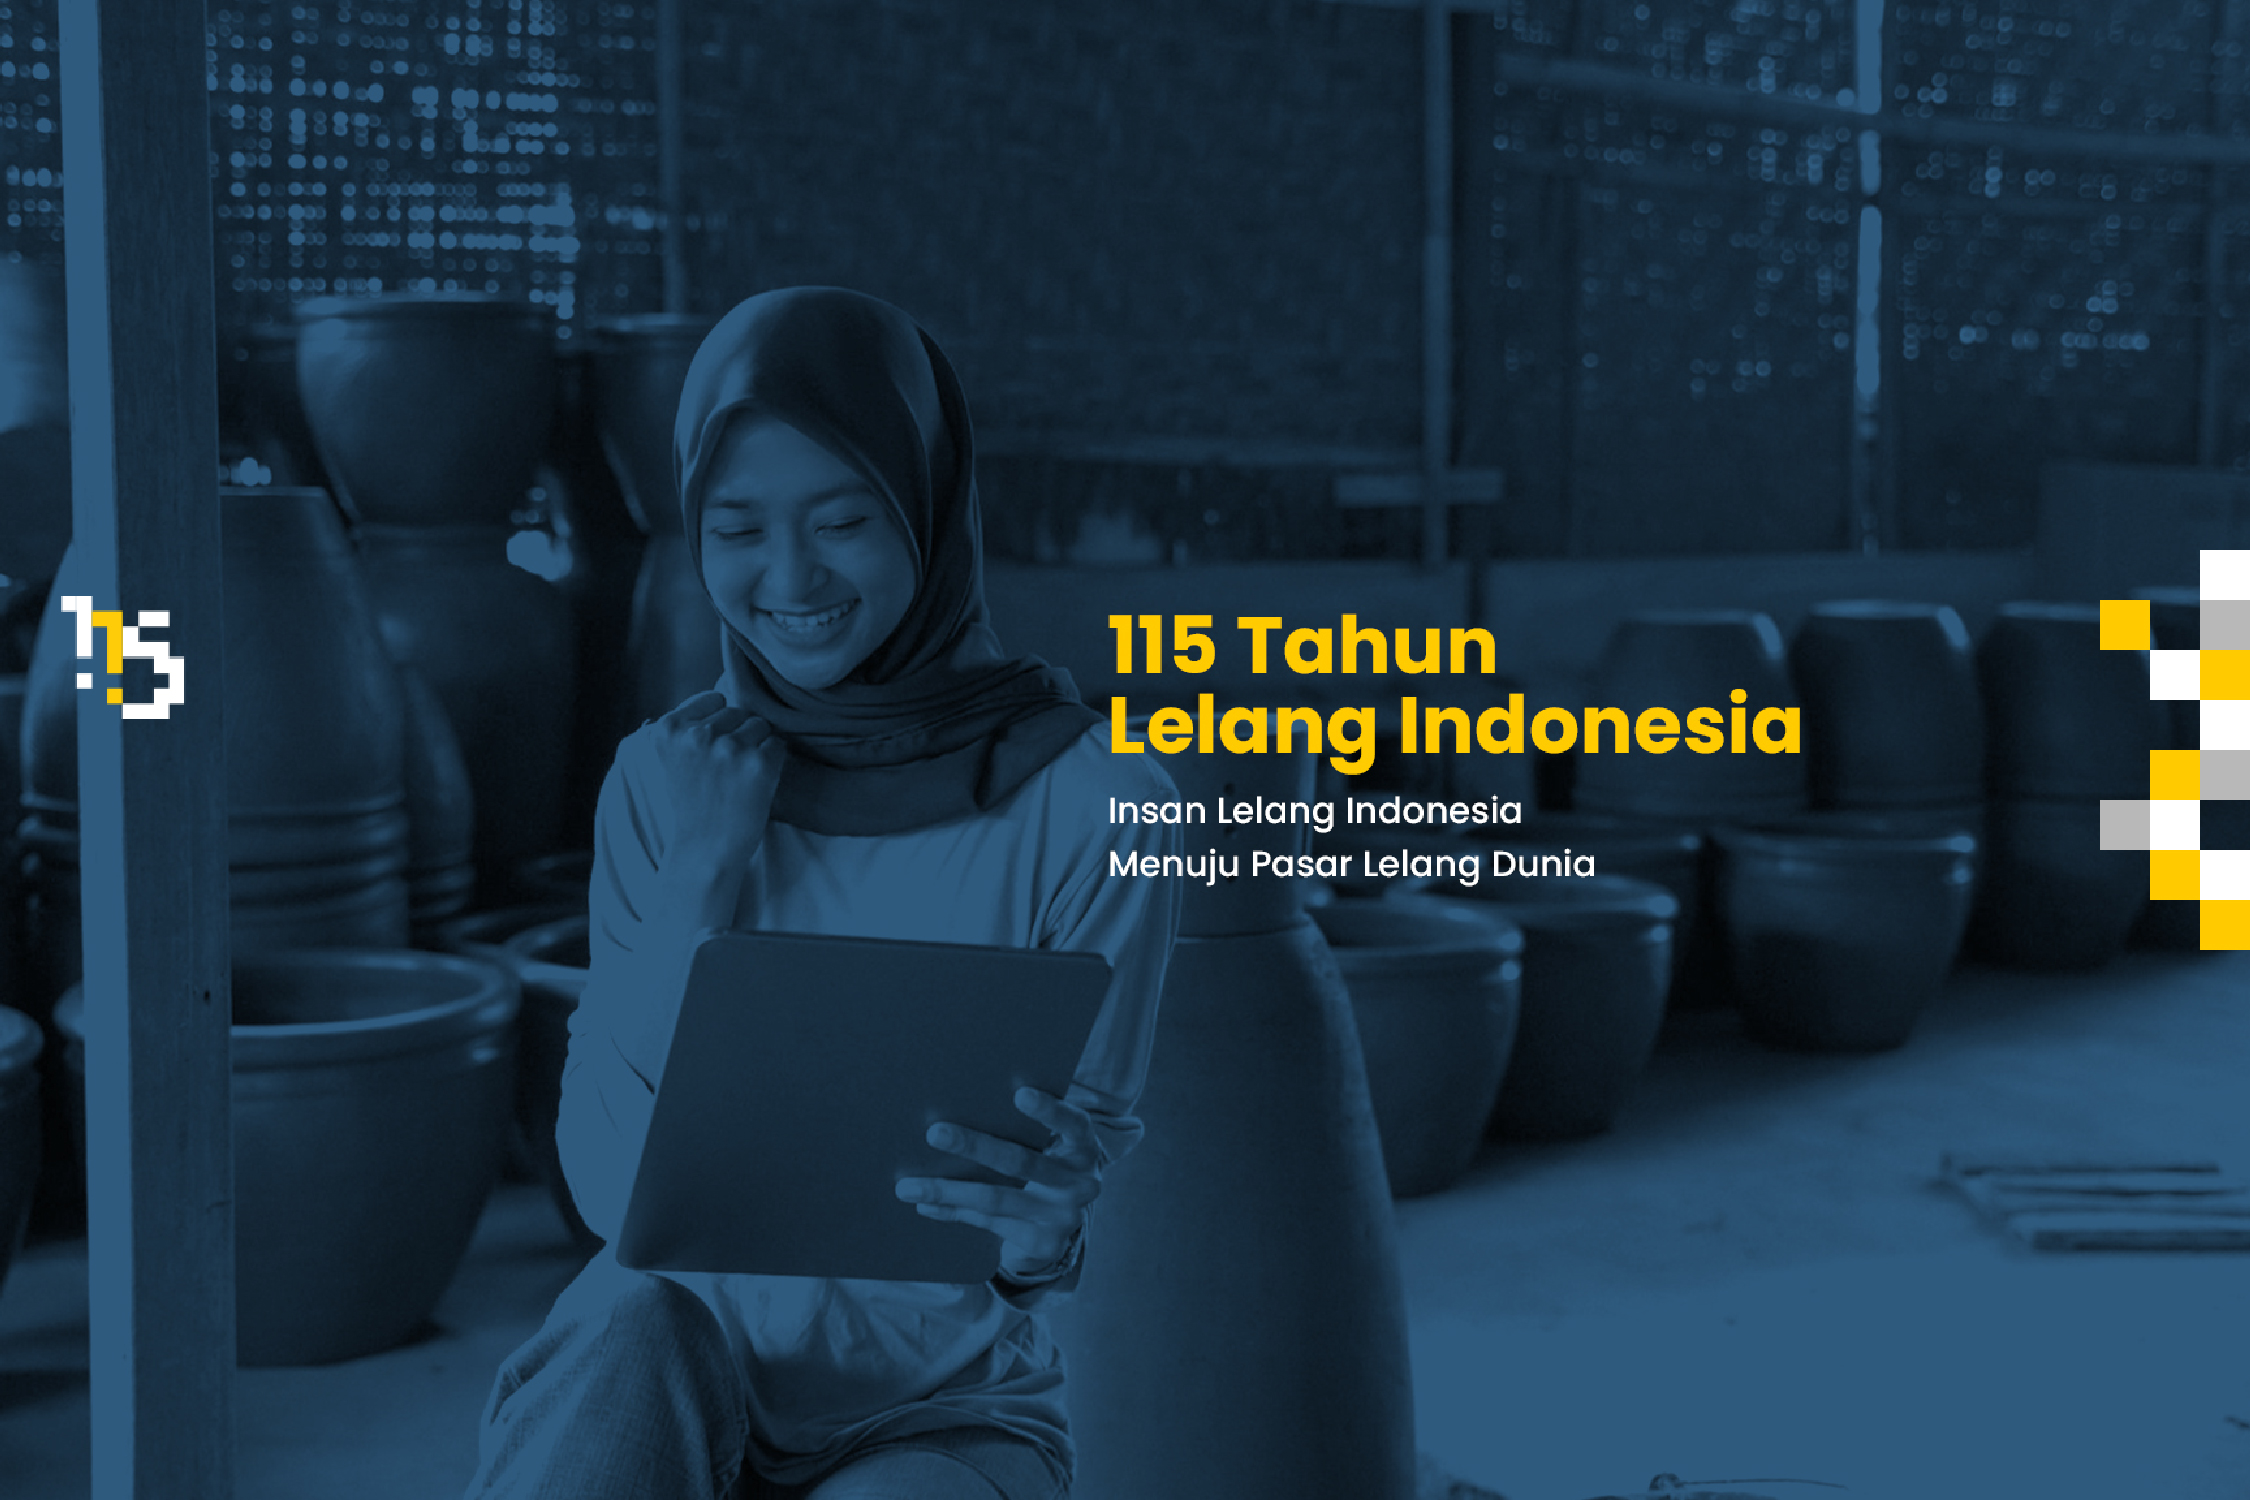 115 Tahun Lelang Indonesia, Insan Lelang Indonesia Menuju Pasar Lelang Dunia